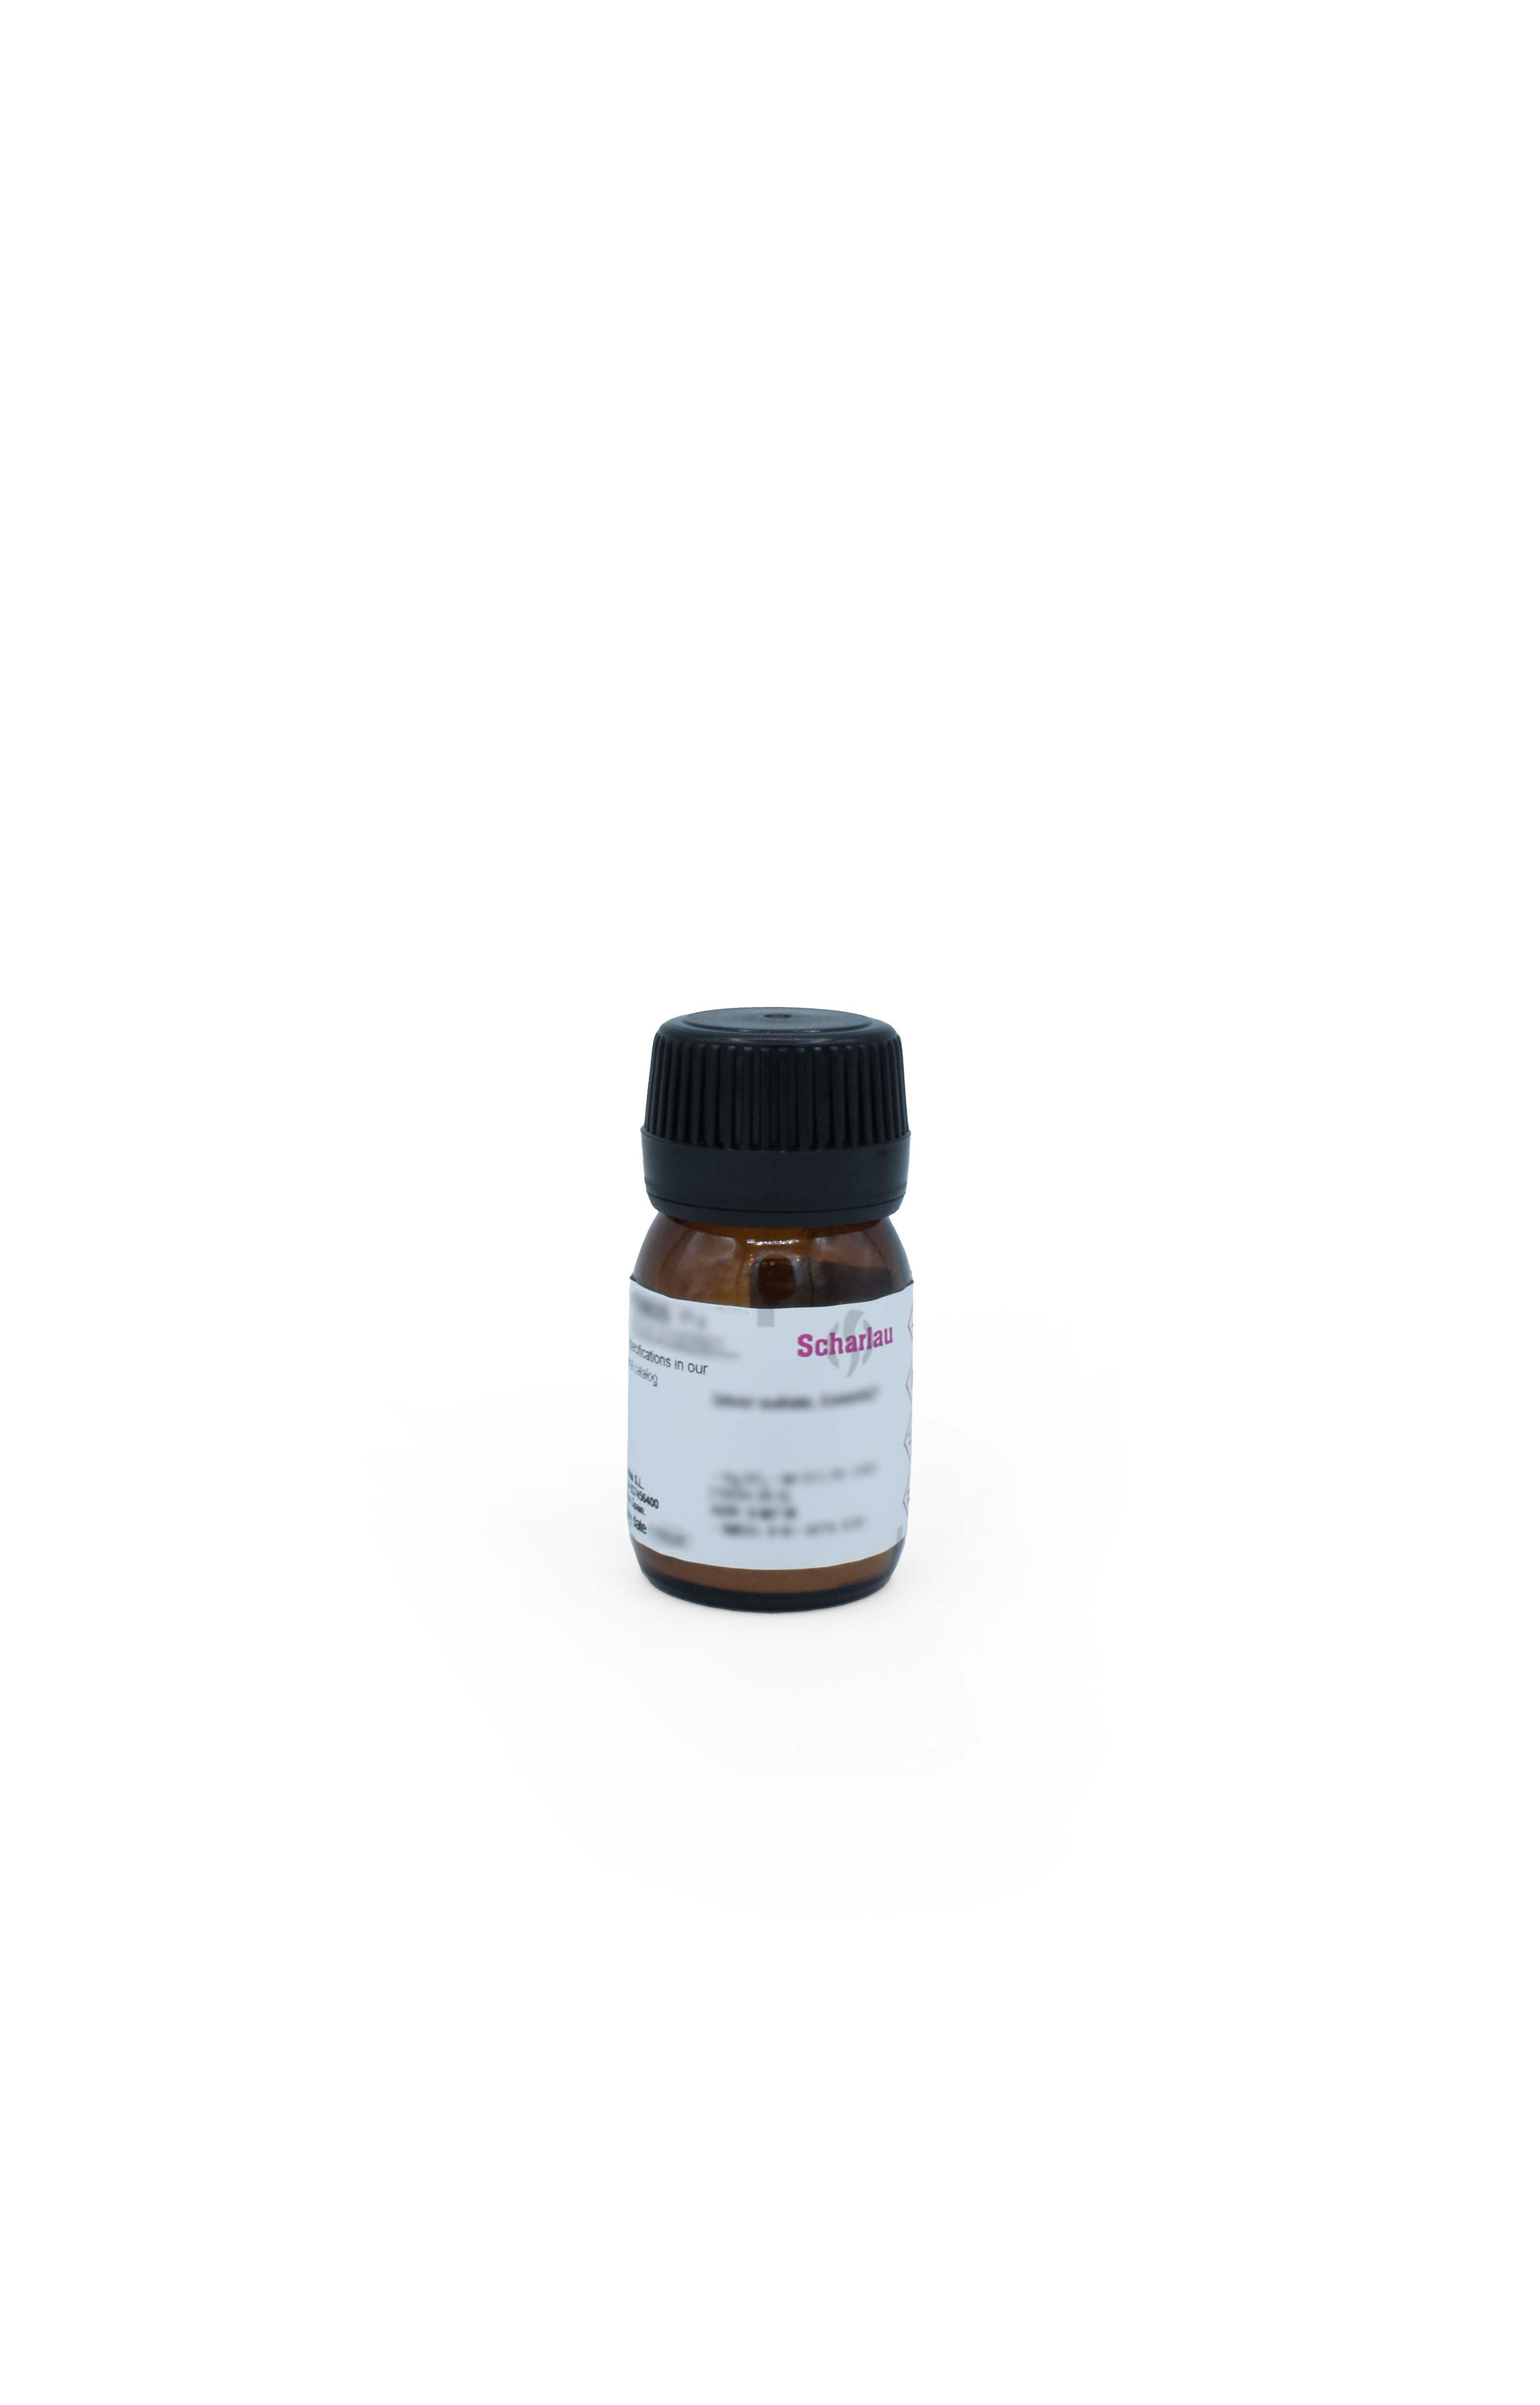 Ampicilina, sal sódica, para fines bioquímicos, D(-)-a-Aminobencilpenicilina, sal de sodio